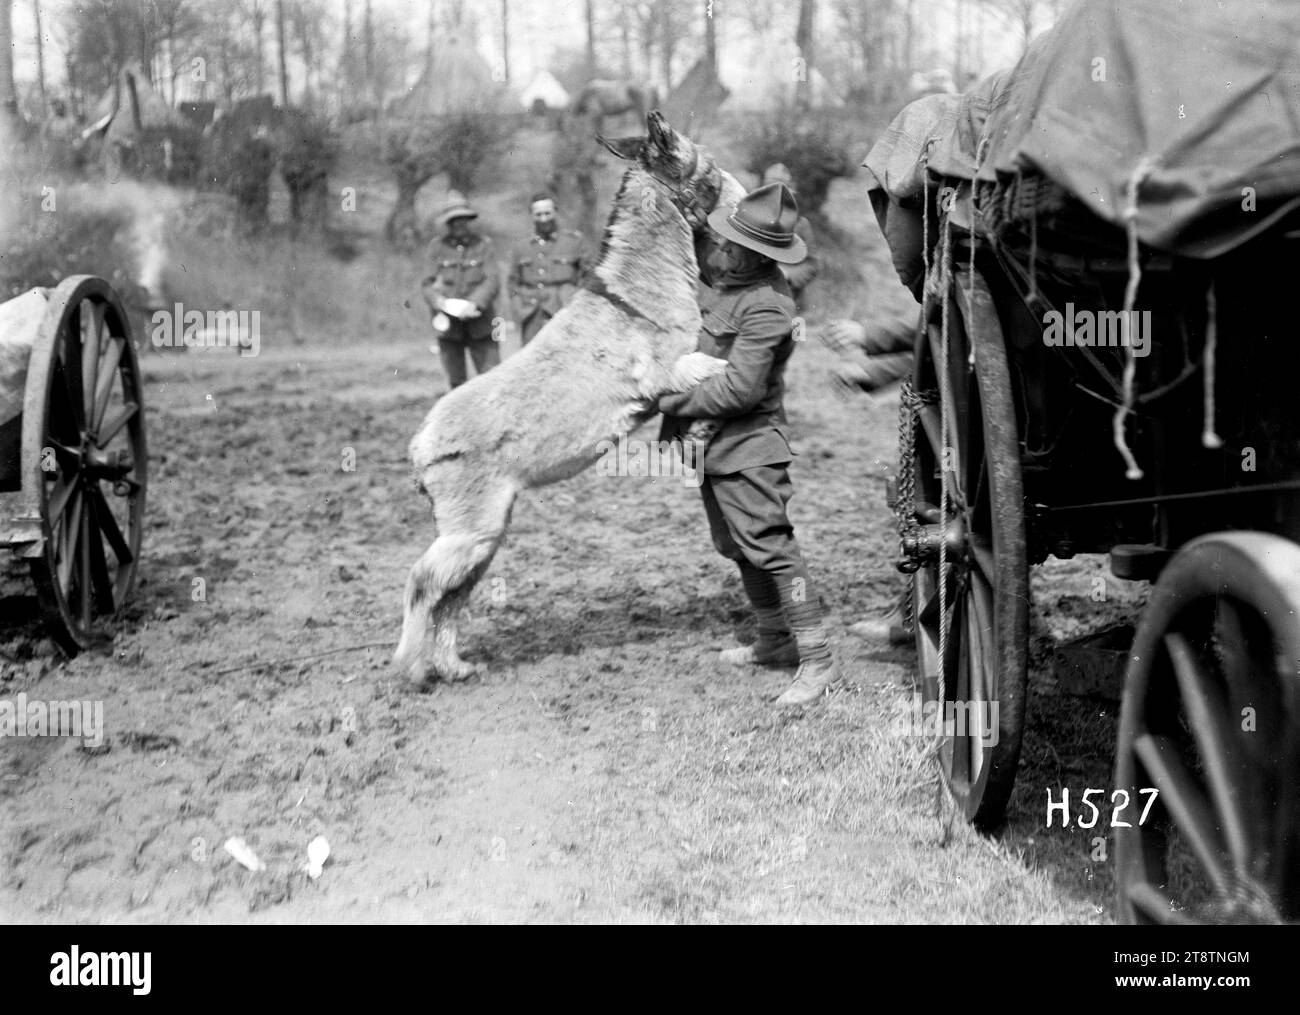 Moses, das Eselmaskottchen der New Zealand Army Service Company, springt spielerisch auf einen Soldaten. Foto: Louvencourt am 20. April 1918 Stockfoto